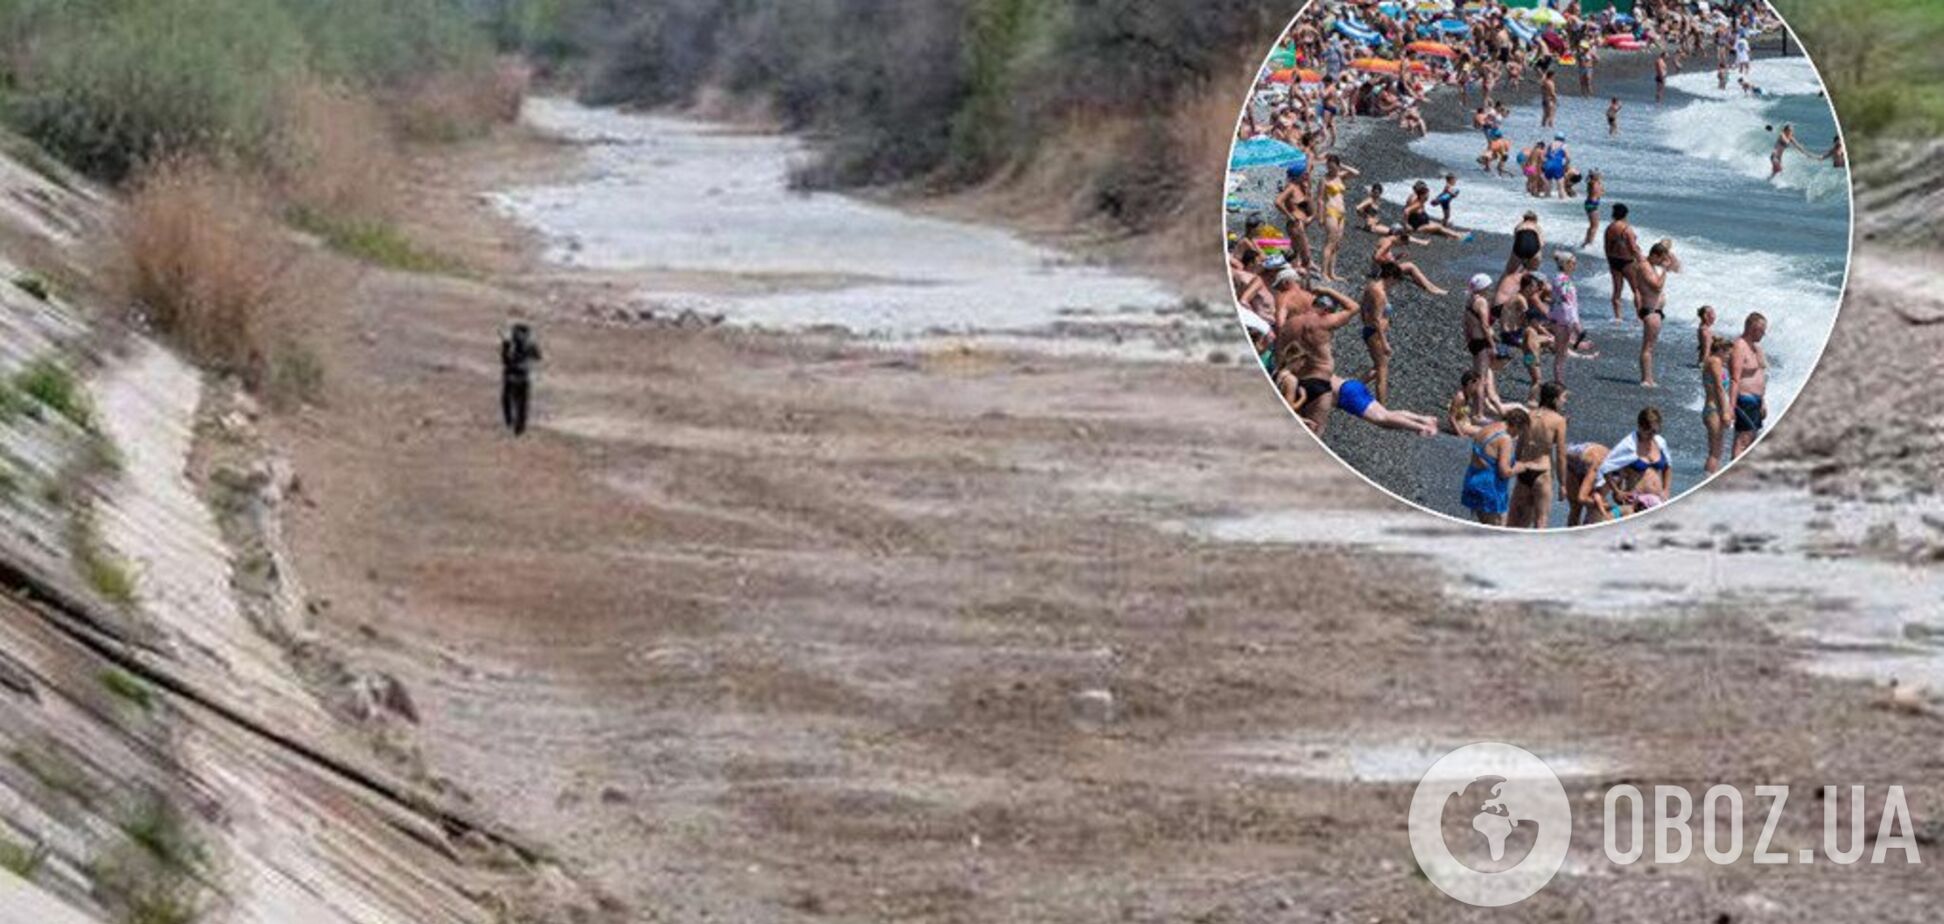 Туристы выпили всю воду: в Крыму нашли виновных в катастрофической засухе